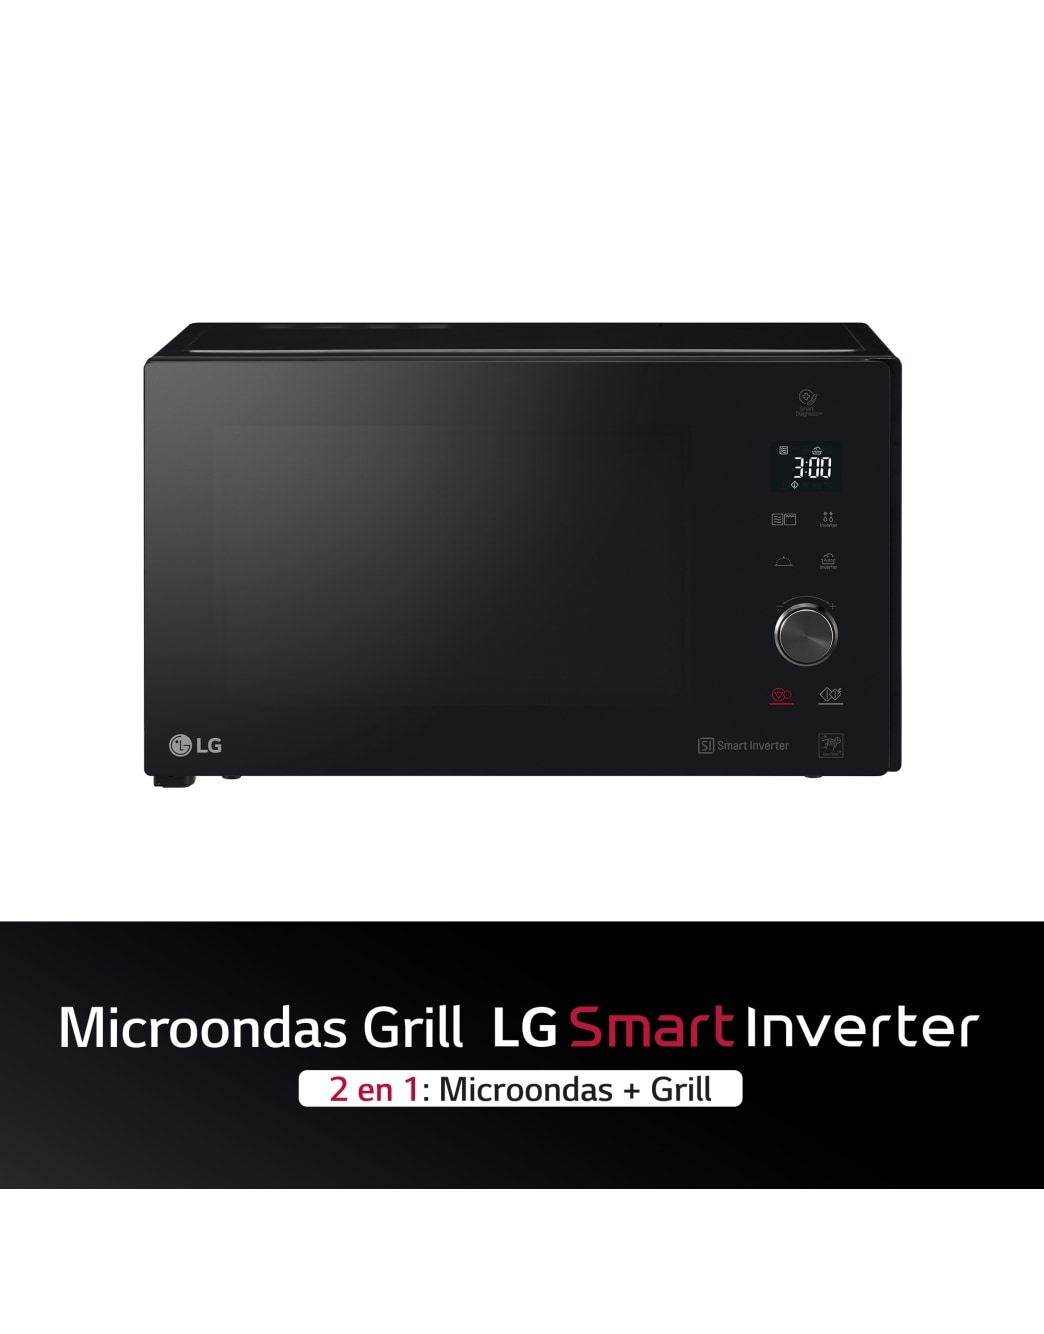 Microondas LG Smart Inverter MH7265DPS, el horno más rápido pensado para  ahorrar